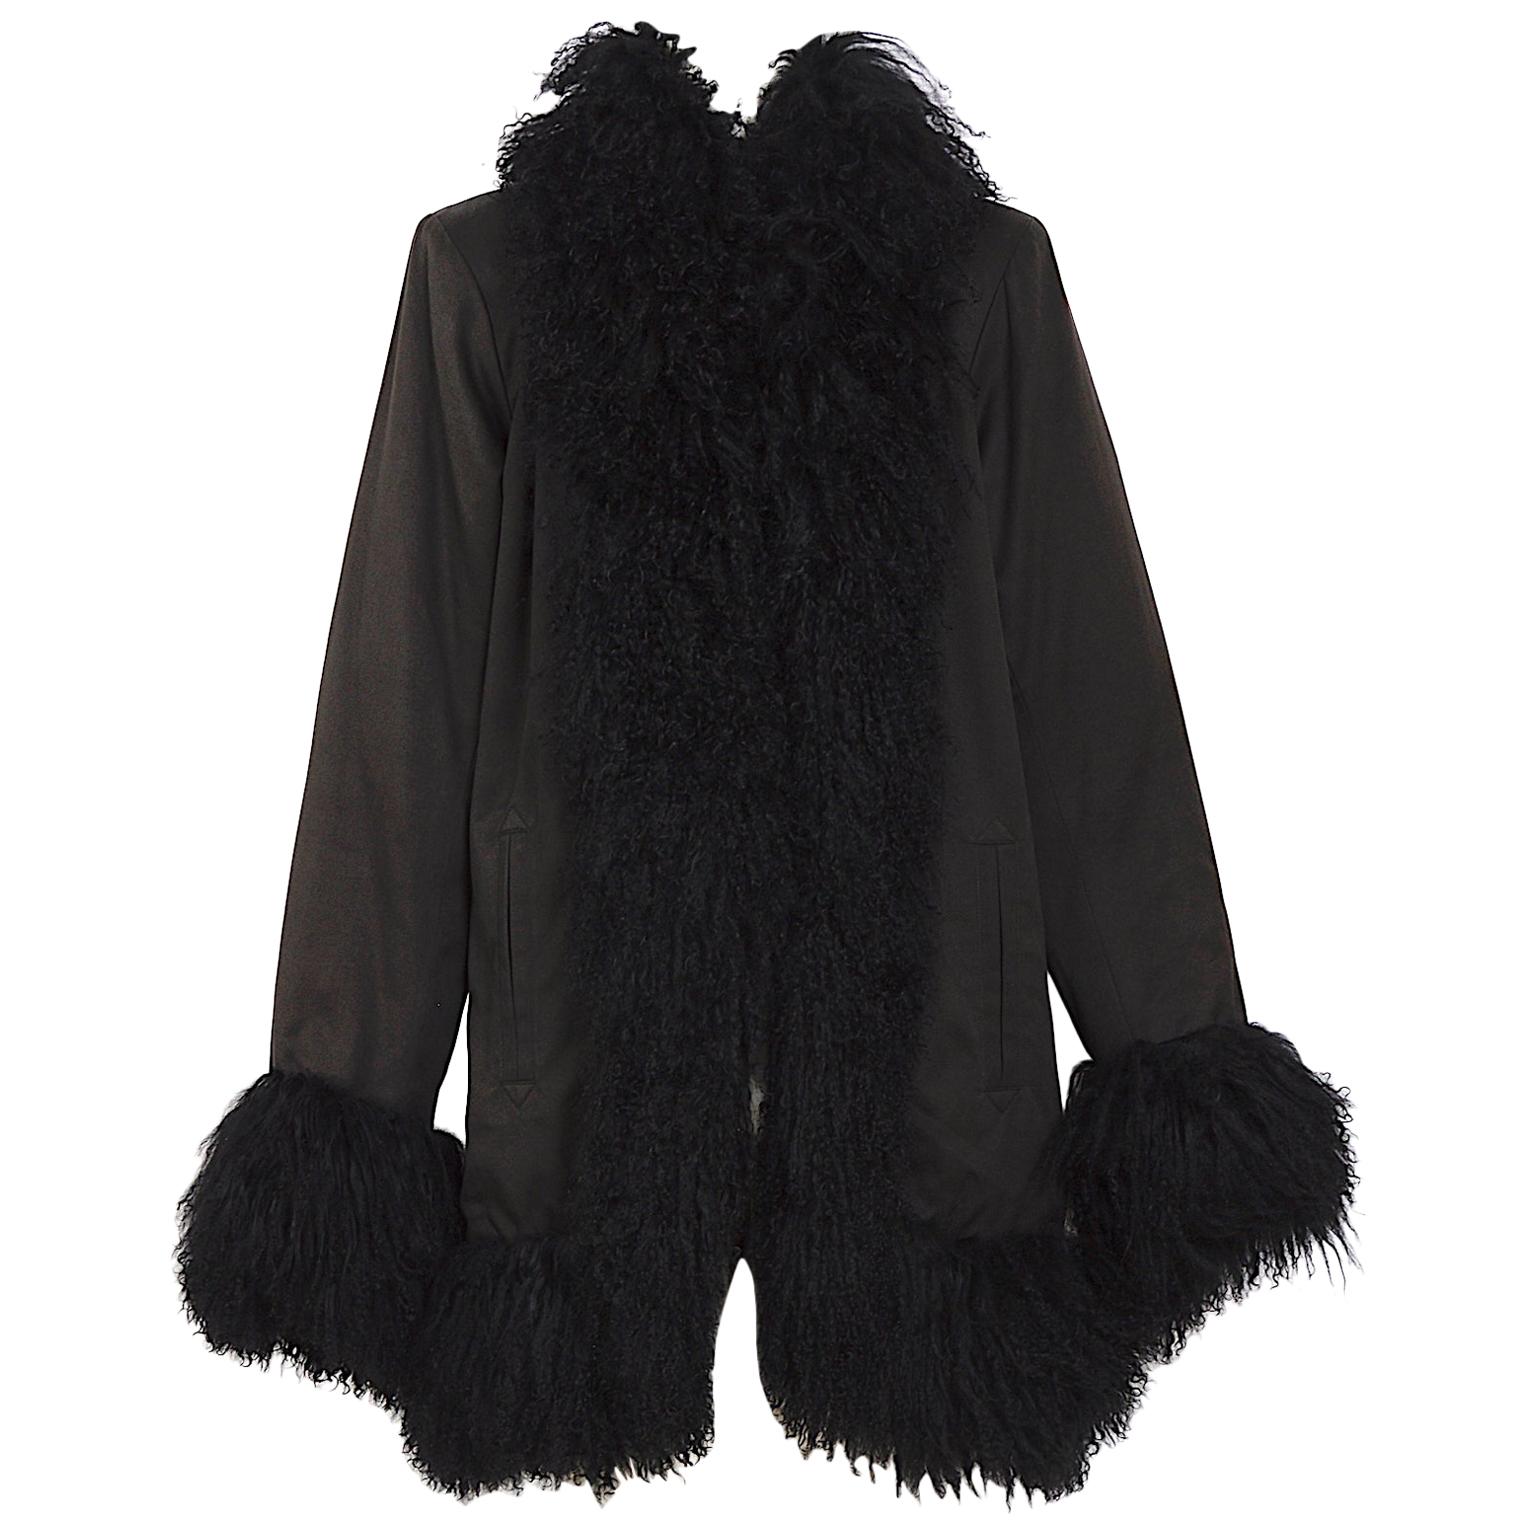 Yves Saint Laurent fourrures vintage black Mongolian lamb fur trimmed coat 